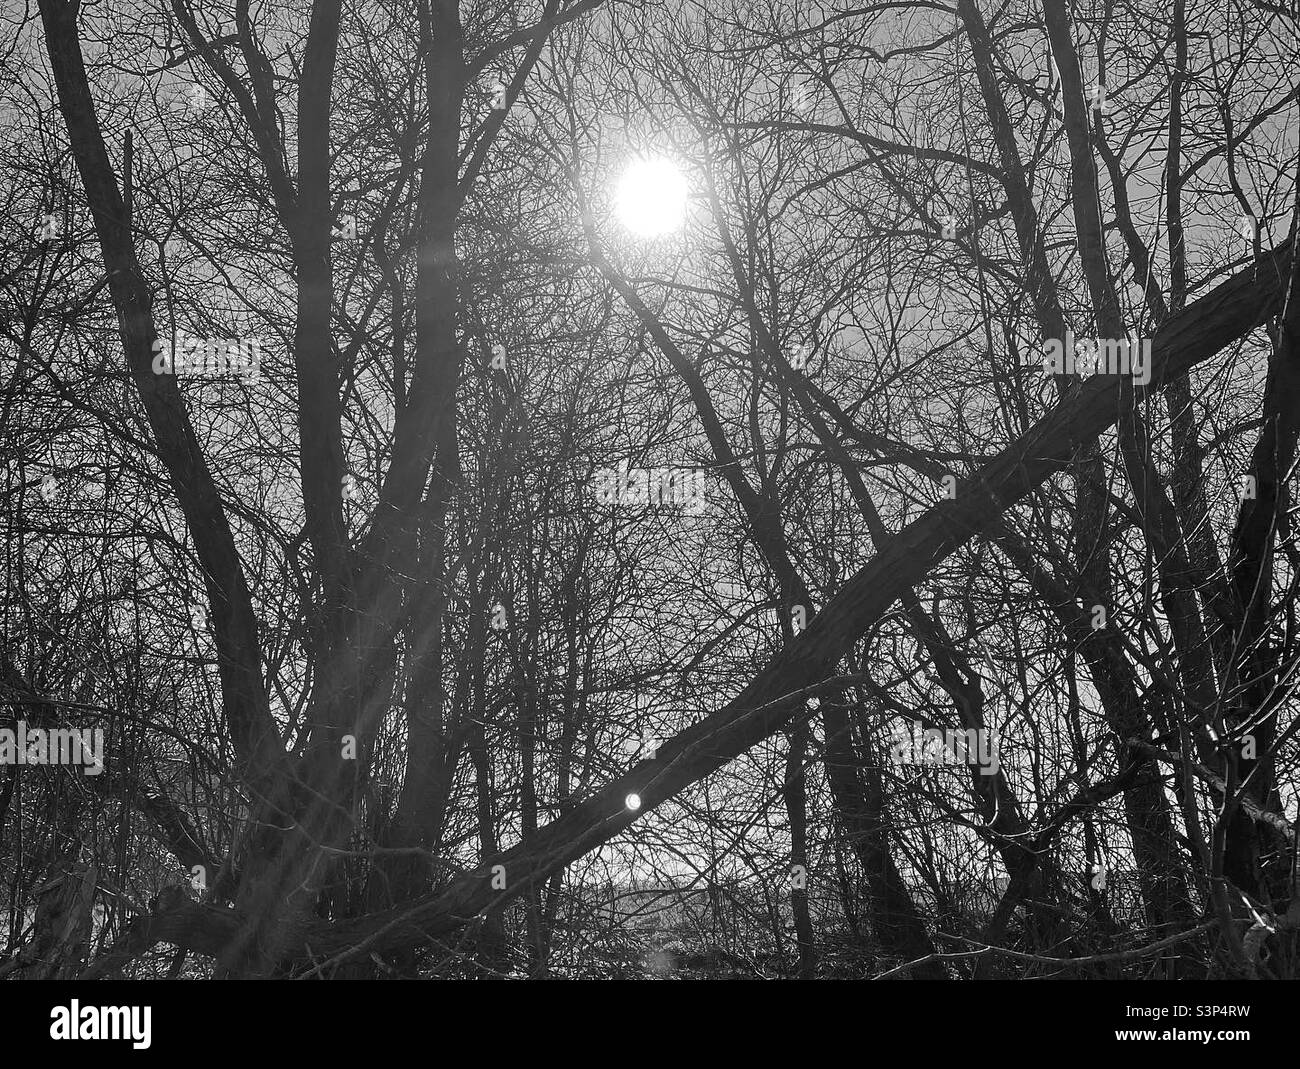 Silhouette de soleil qui brille à travers les branches de l'arbre Banque D'Images